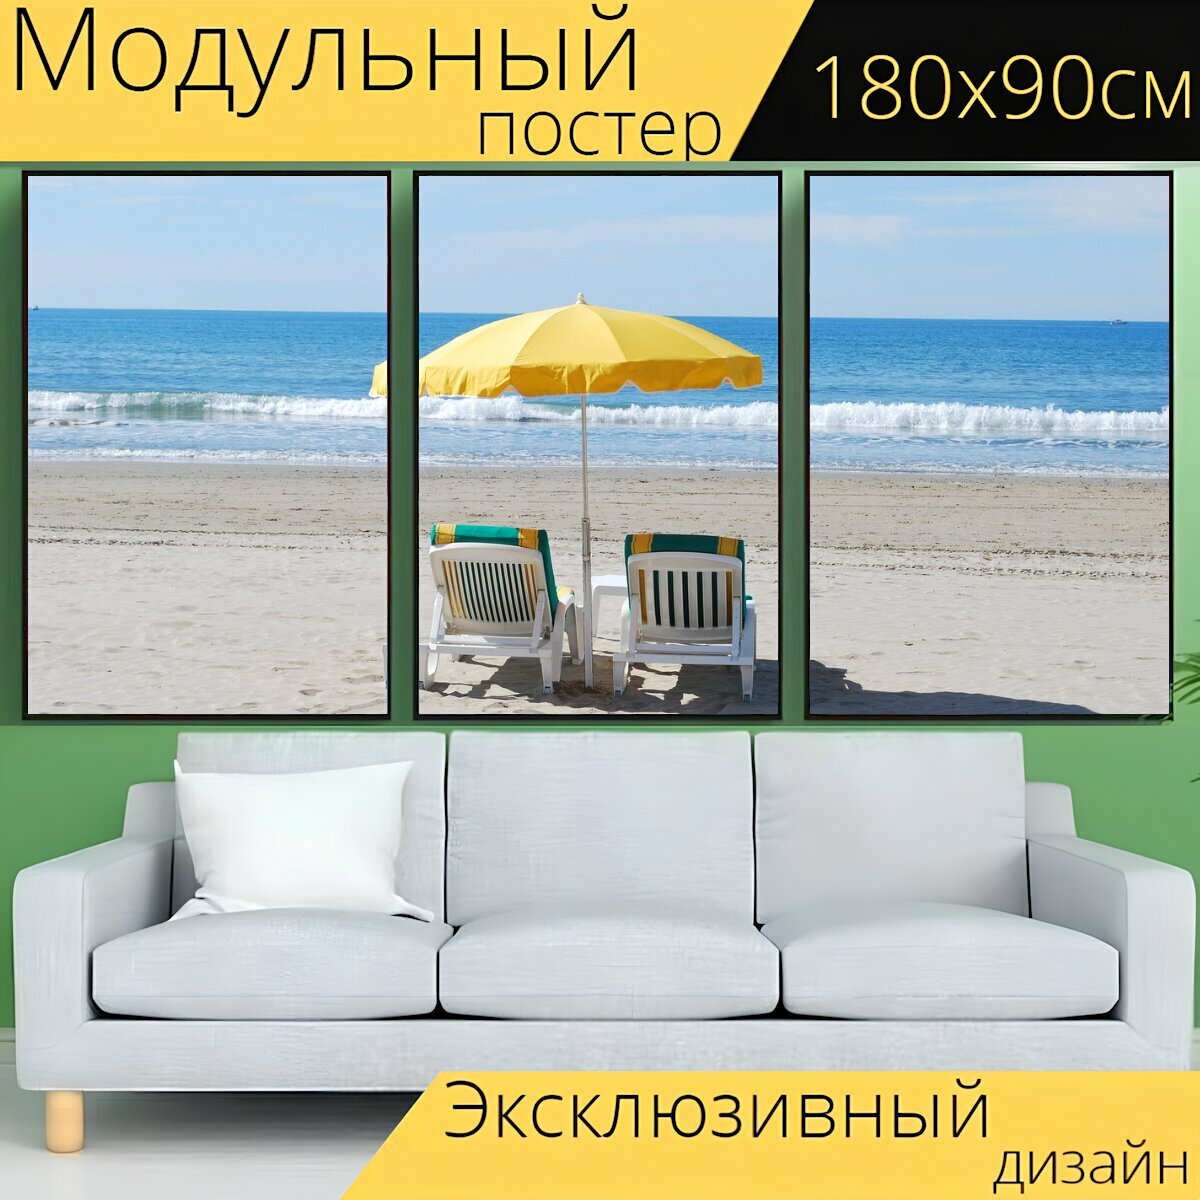 Модульный постер "Пляж, шезлонг, праздник" 180 x 90 см. для интерьера